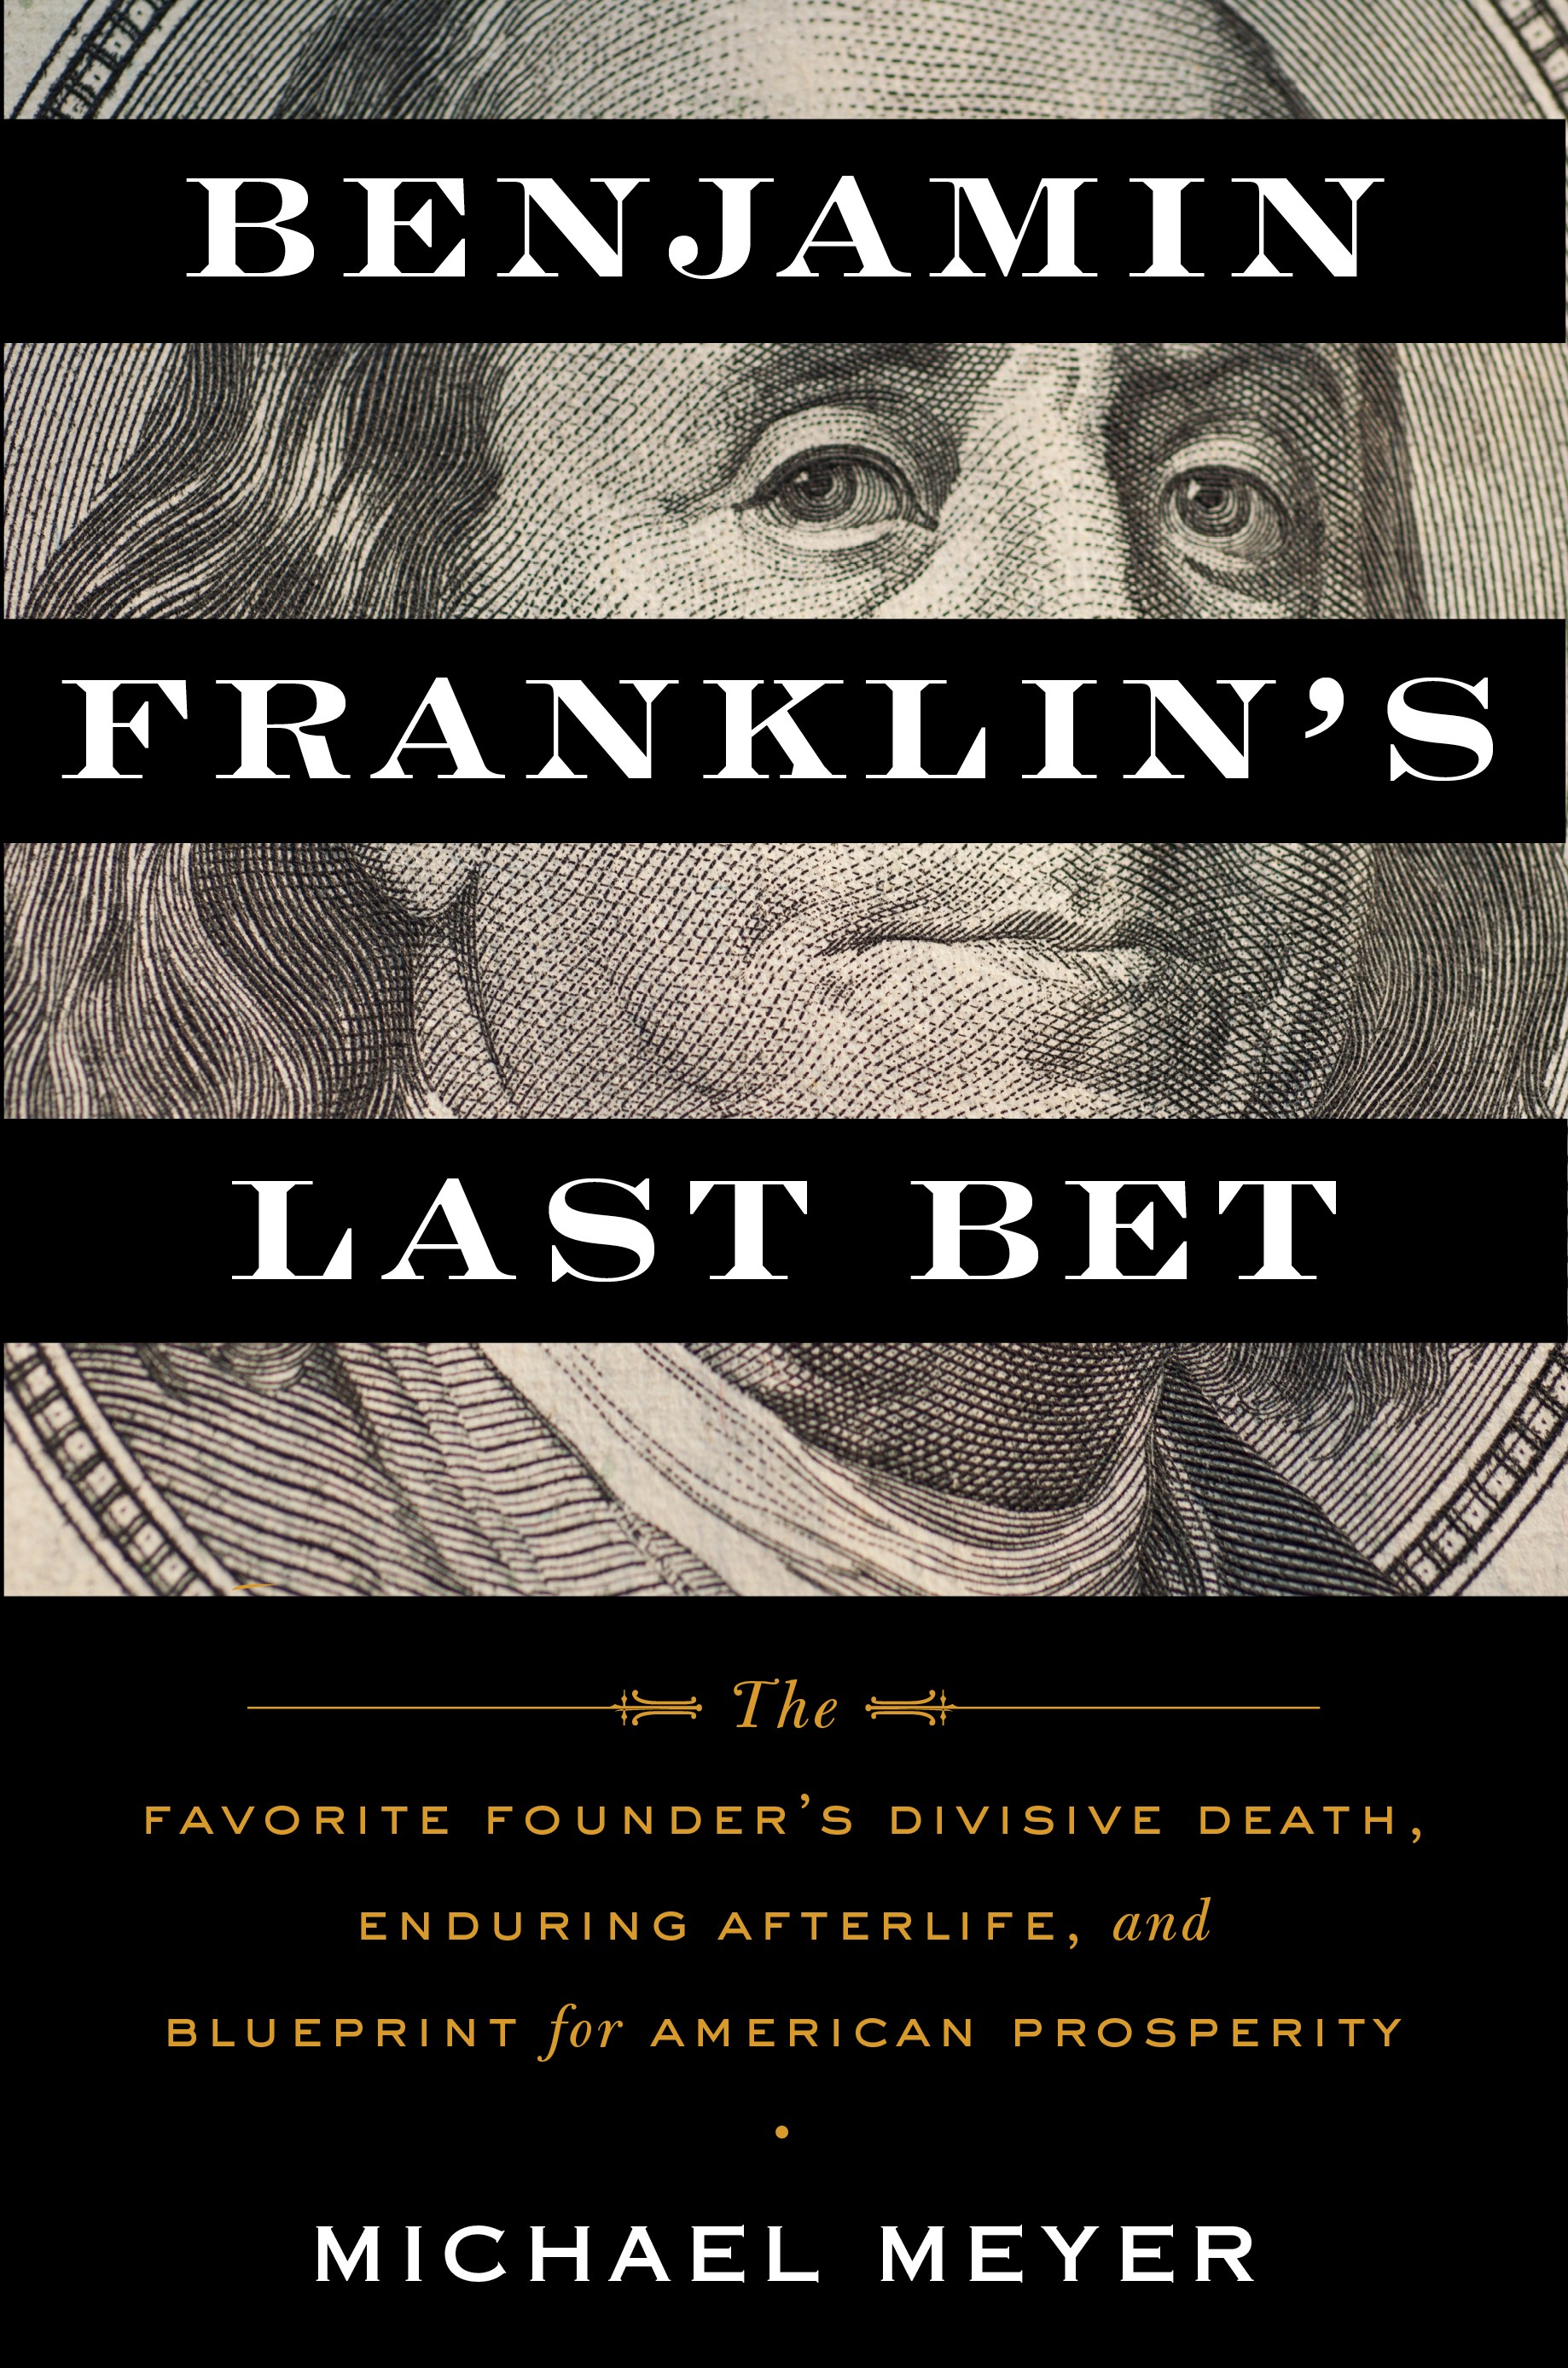 cover of Benjamin Franklin's Last Bet